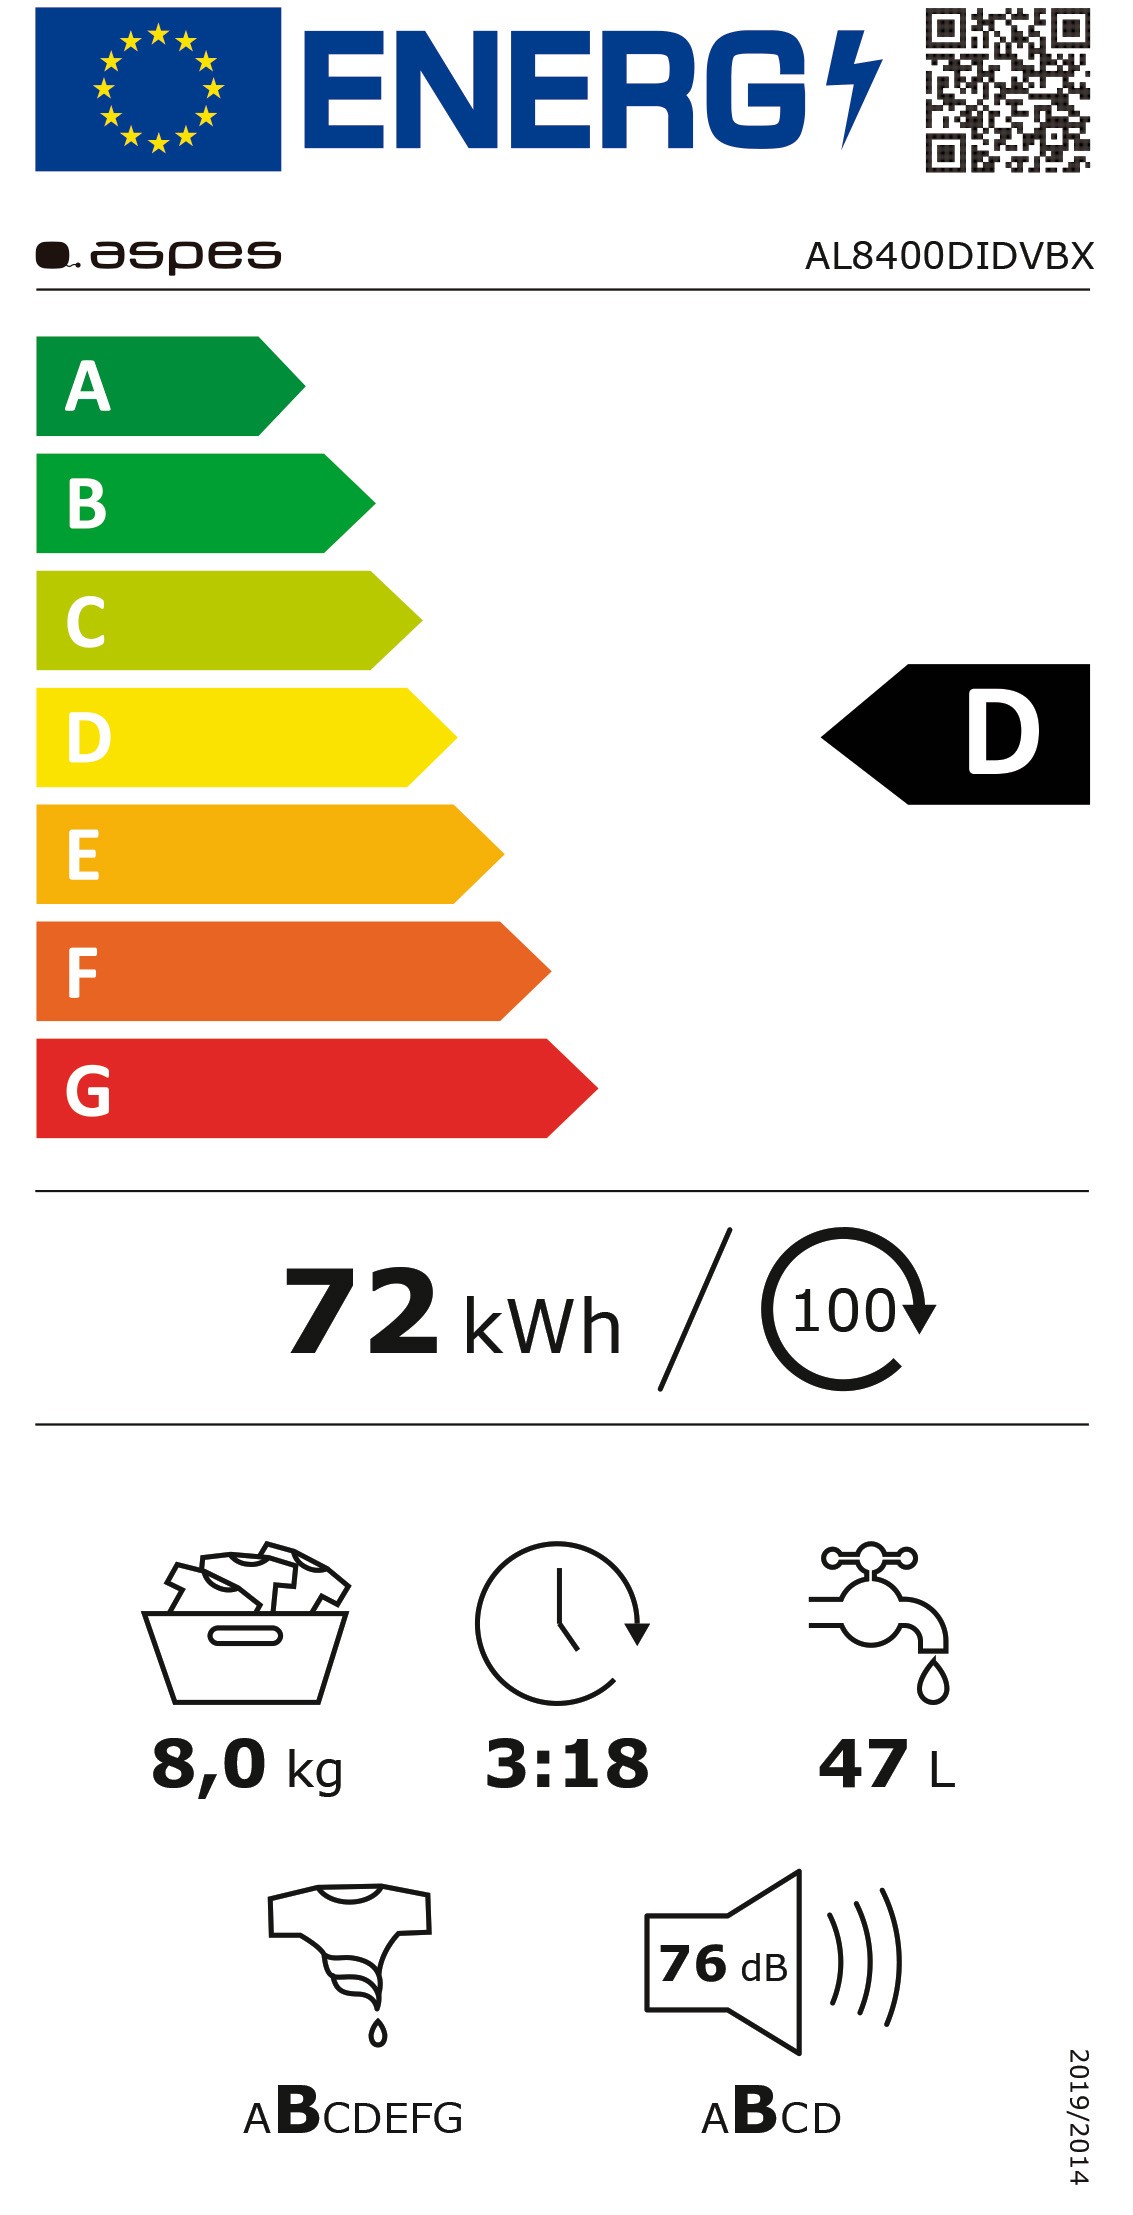 Etiqueta de Eficiencia Energética - AL8400DIDVBX